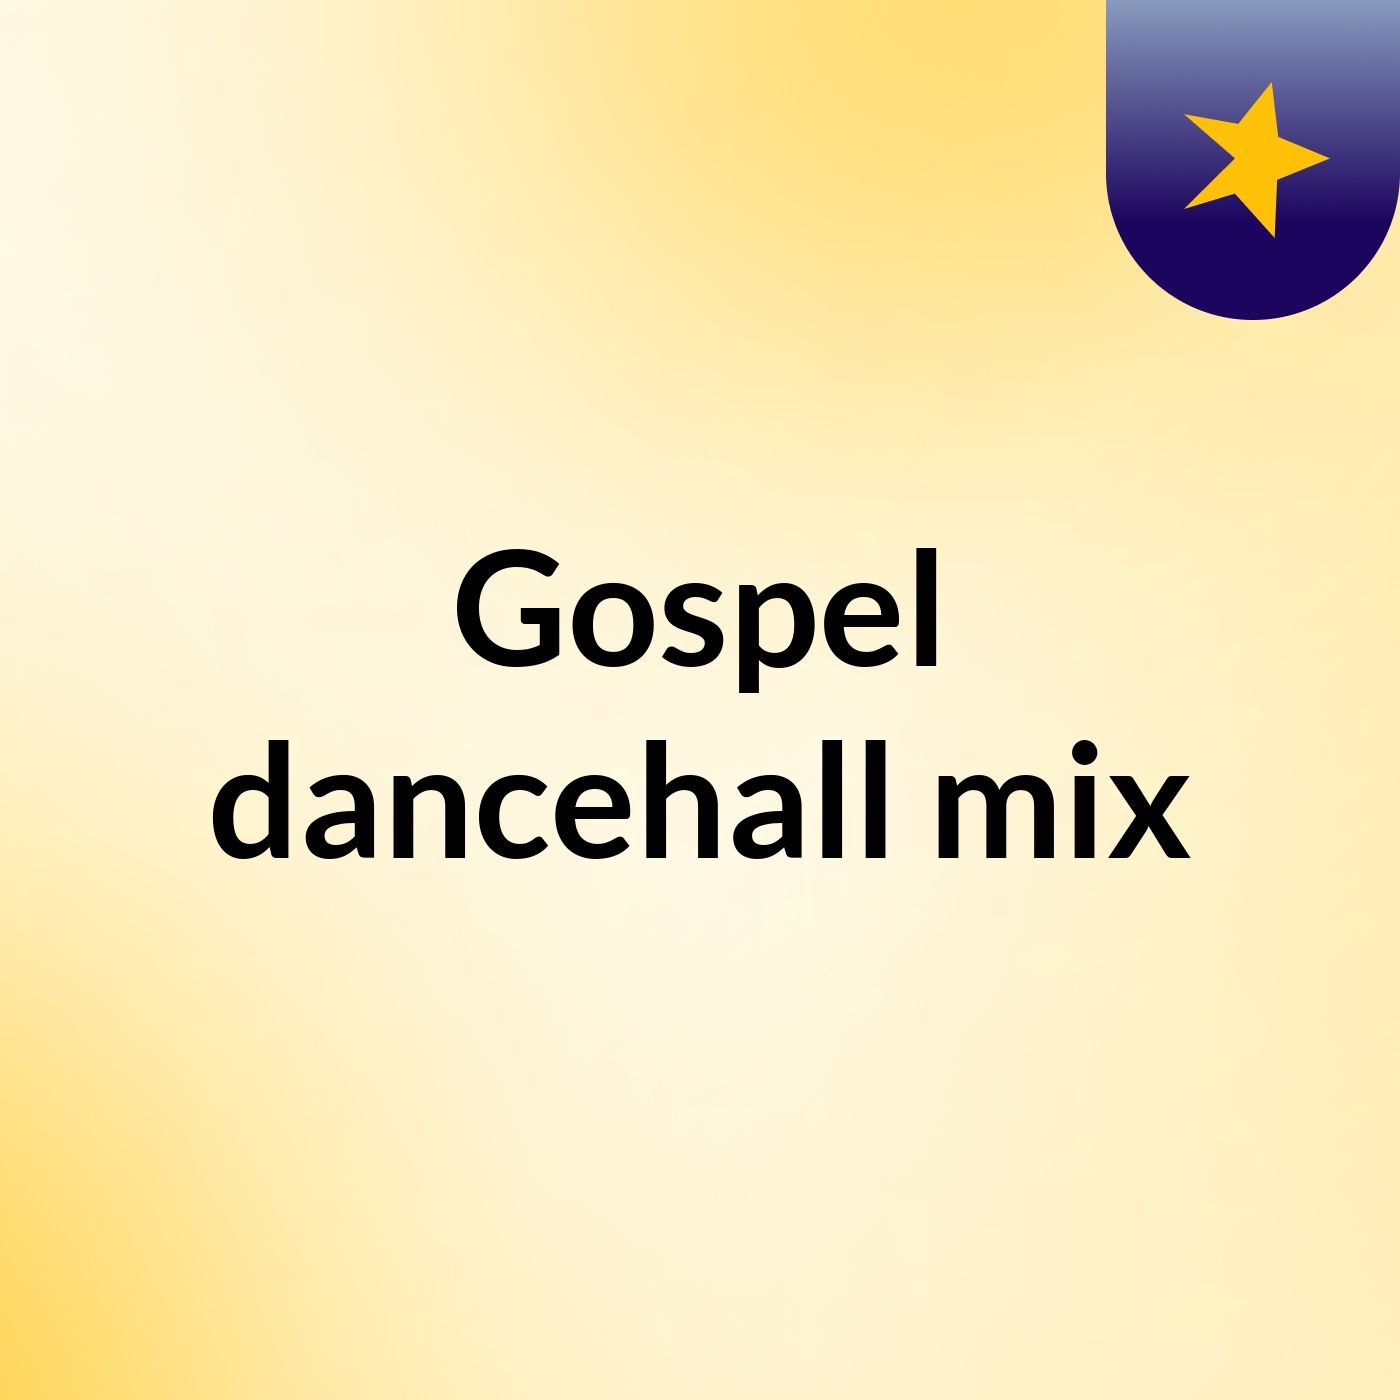 Gospel dancehall mix